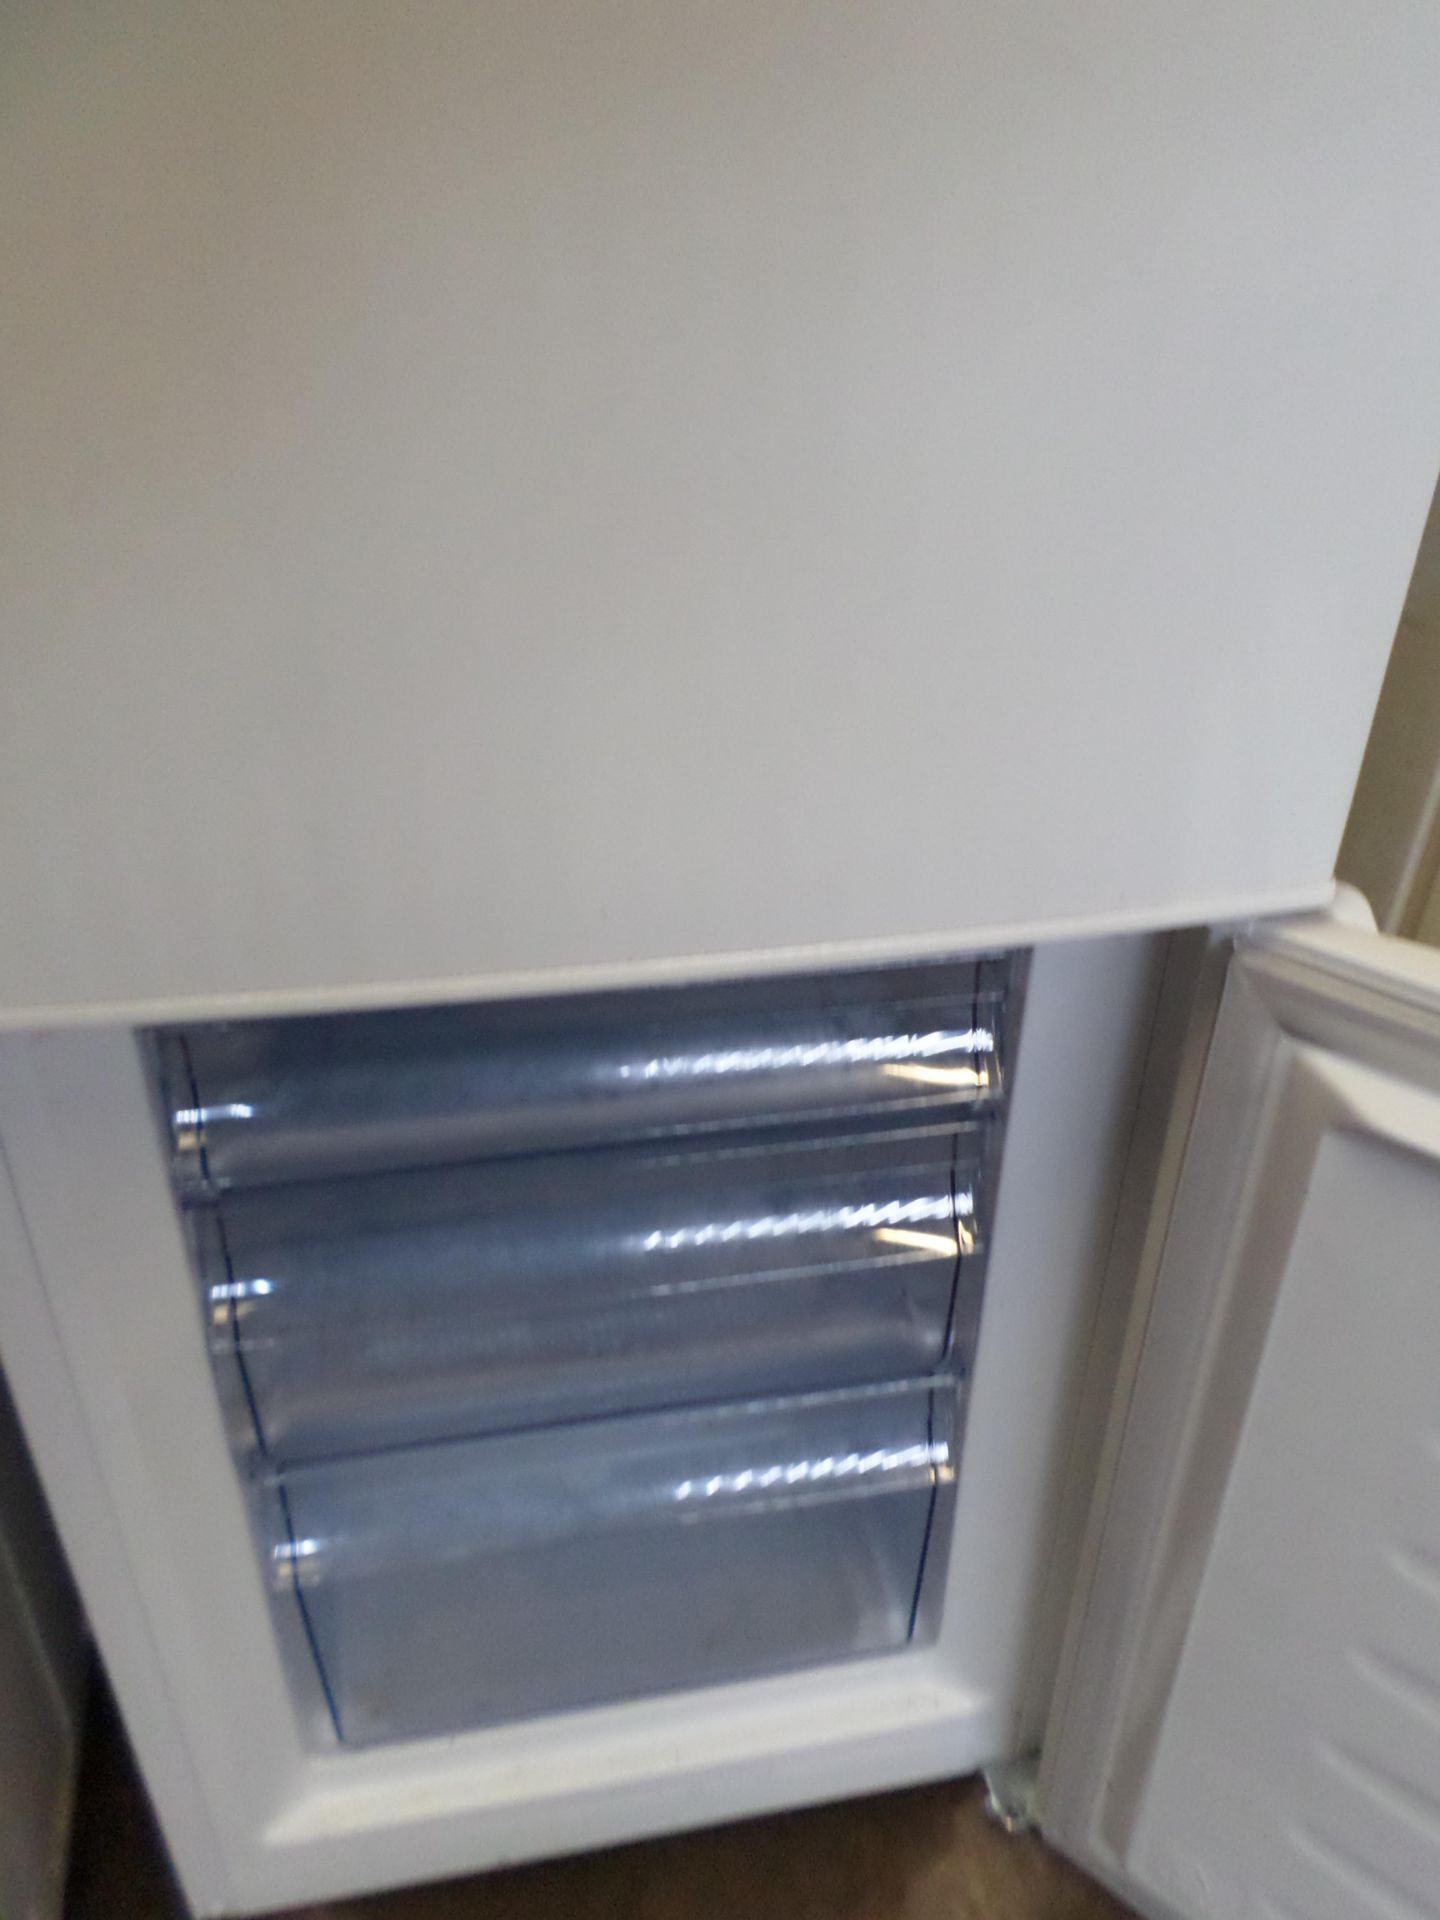 Fridgemaster fridge freezer - Image 2 of 3